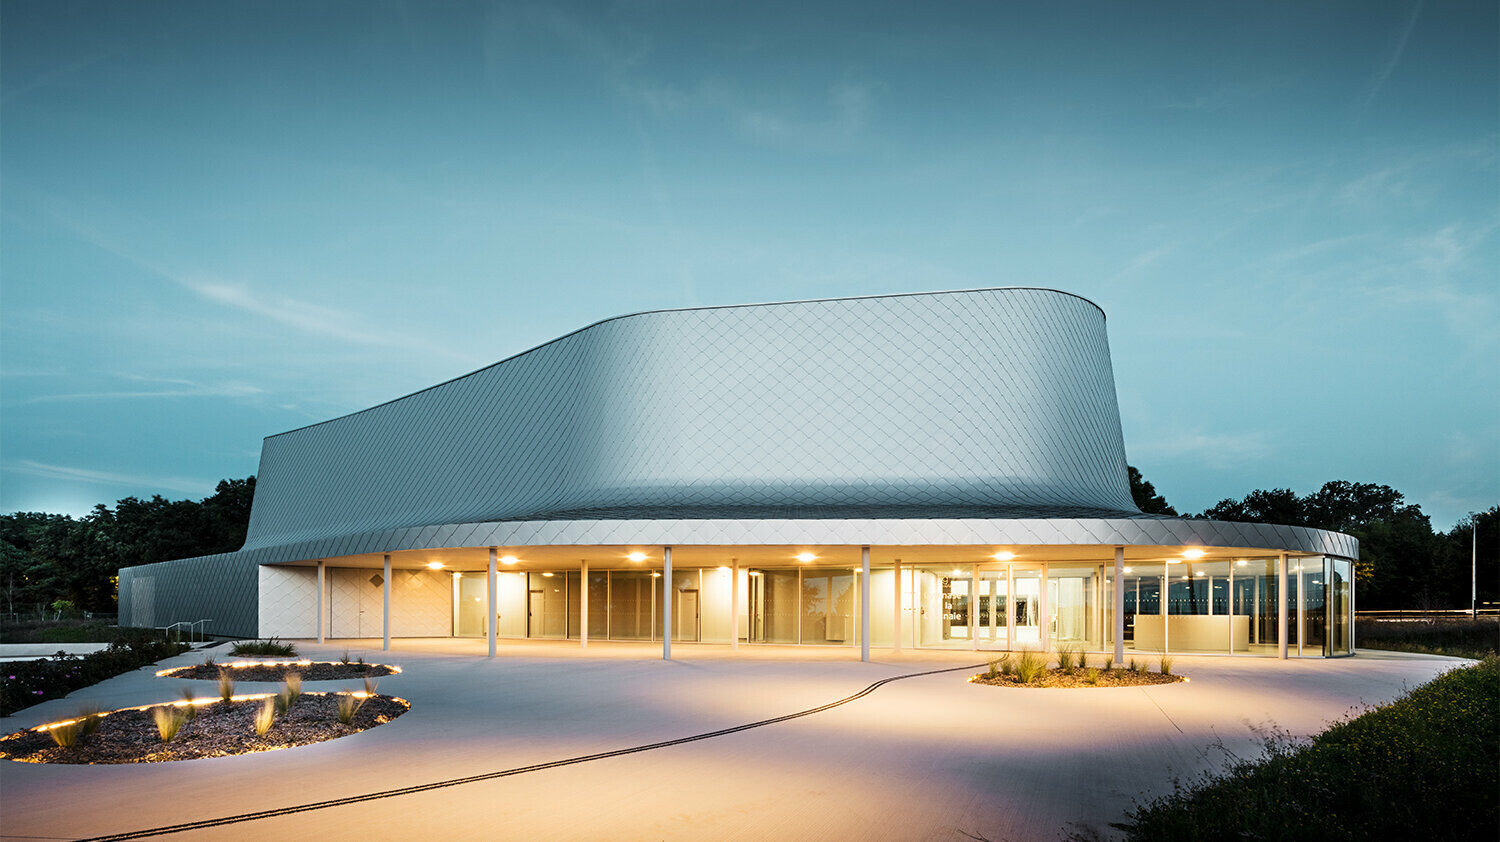 Seitliche Abendaufnahme der von Bohuon Bertic Architectes entworfenen Sporthalle in Basse-Goulaine mit Beleuchtung.